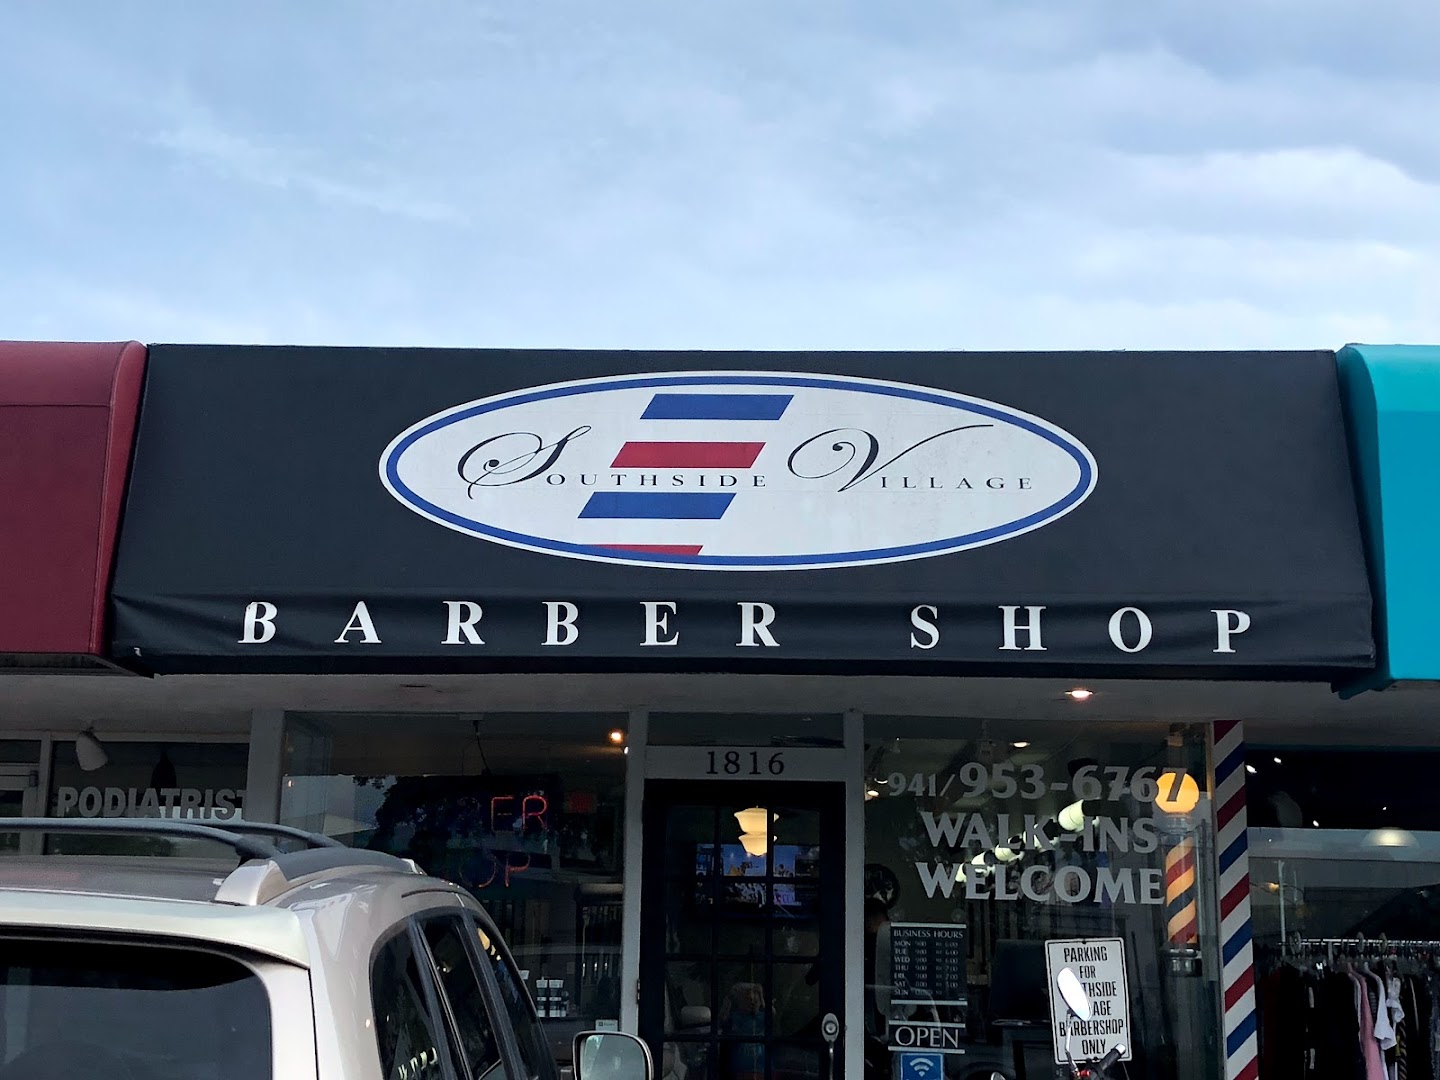 Southside Village Barbershop